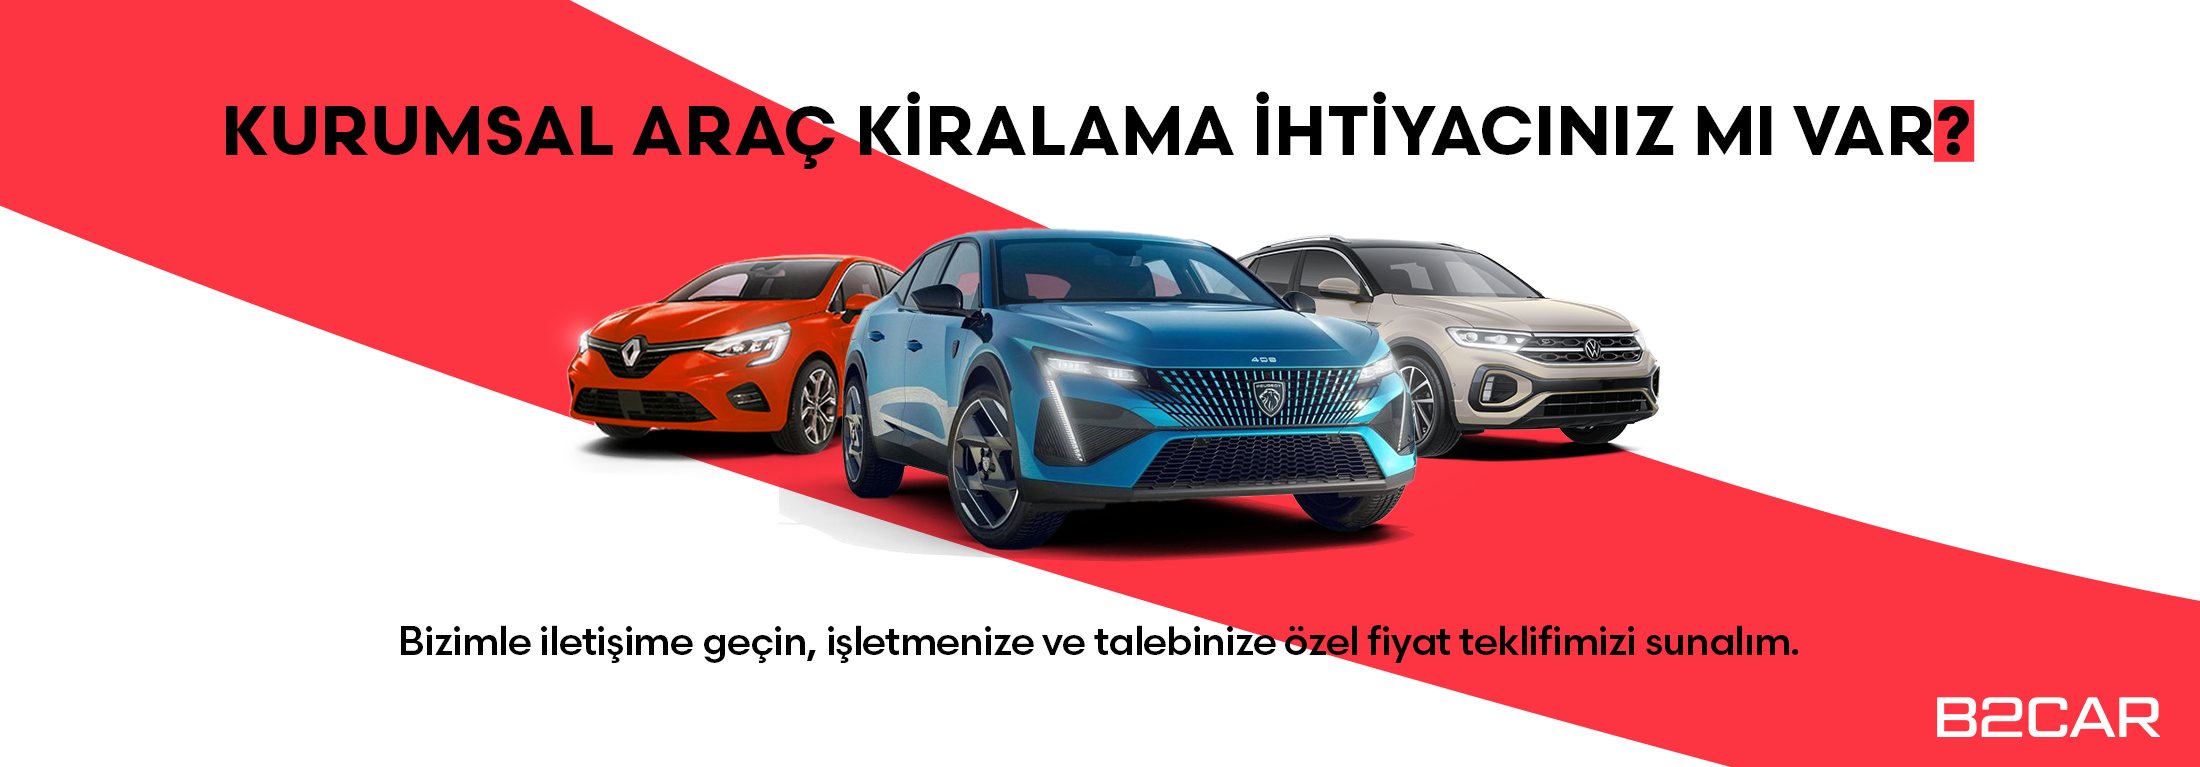 B2Car'da kurumsal araç kiralama fırsatı! | Türkiye Araç Kiralama